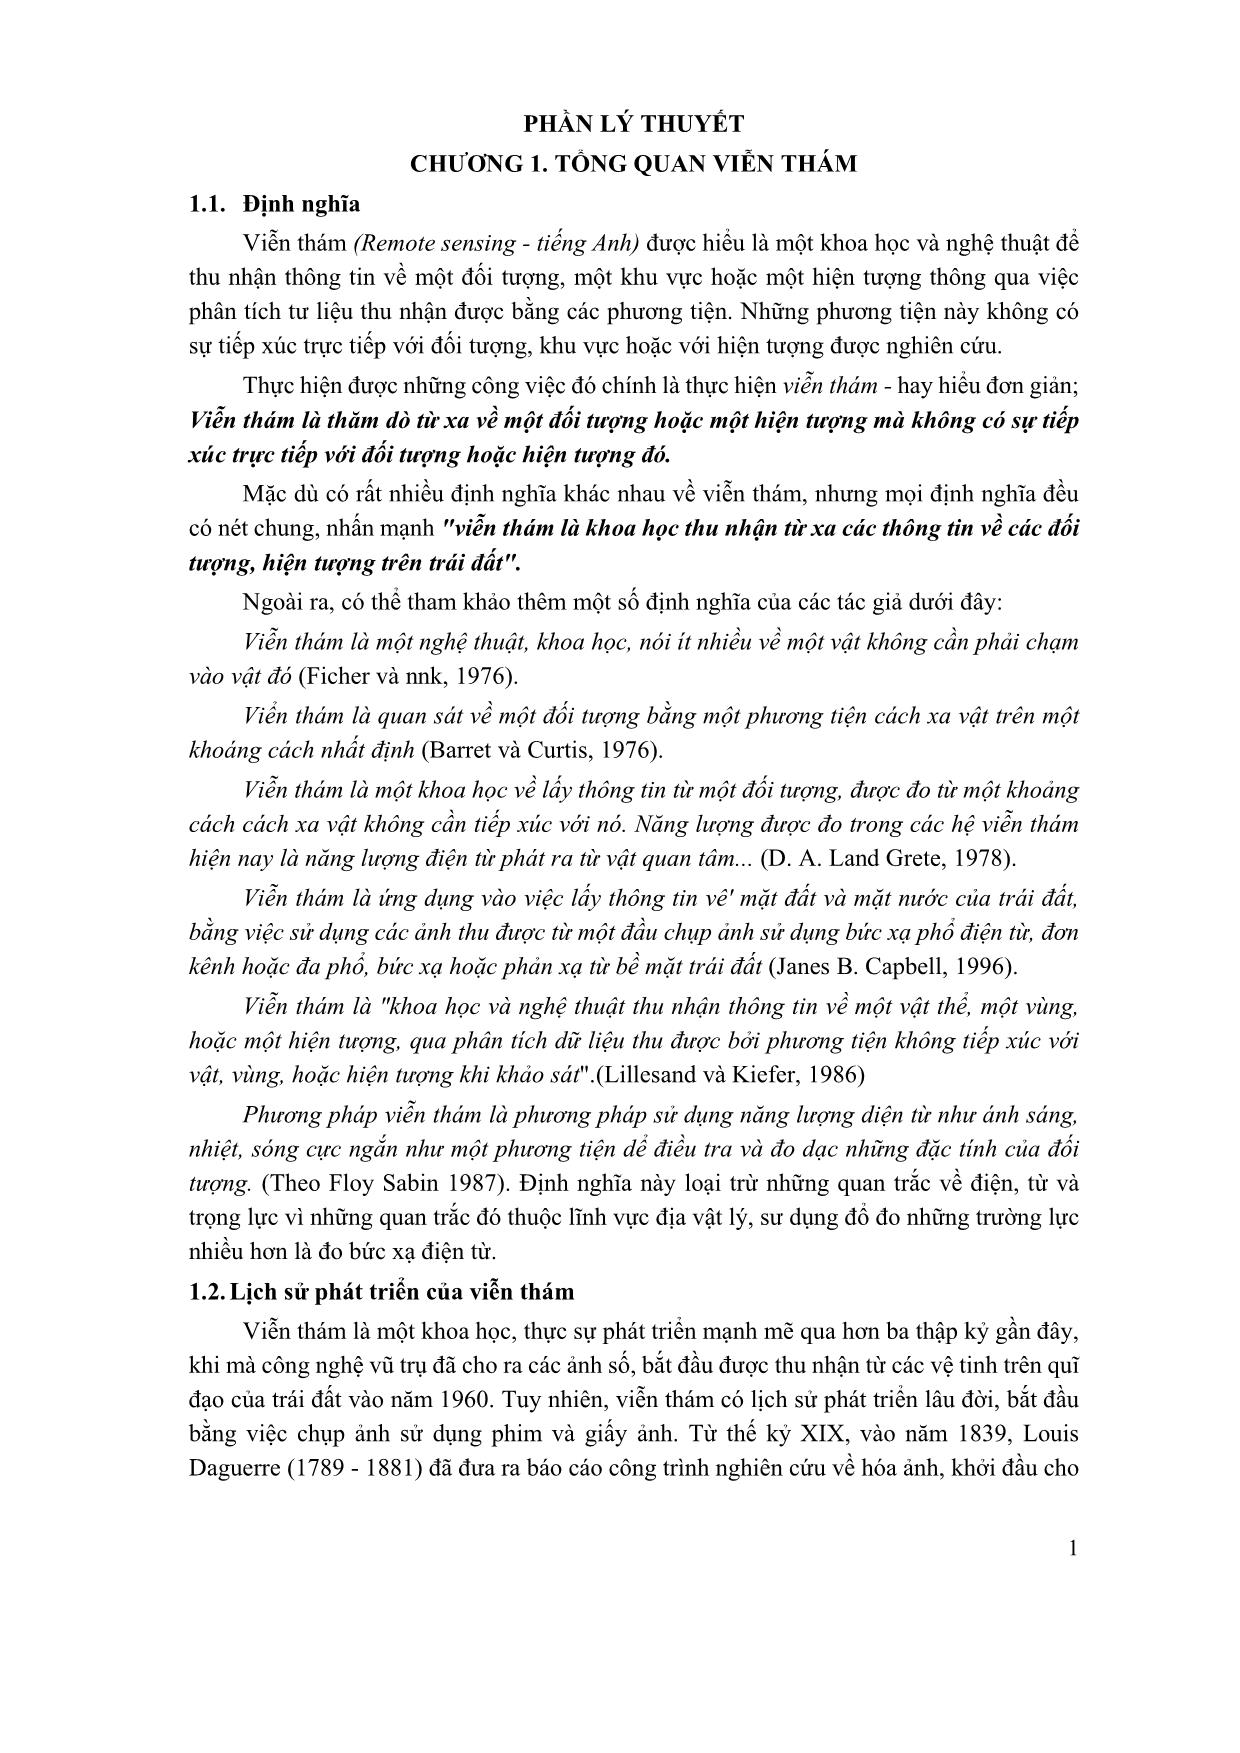 Bài giảng Viễn thám - Nguyễn Đình Tiến (Phần 1) trang 5